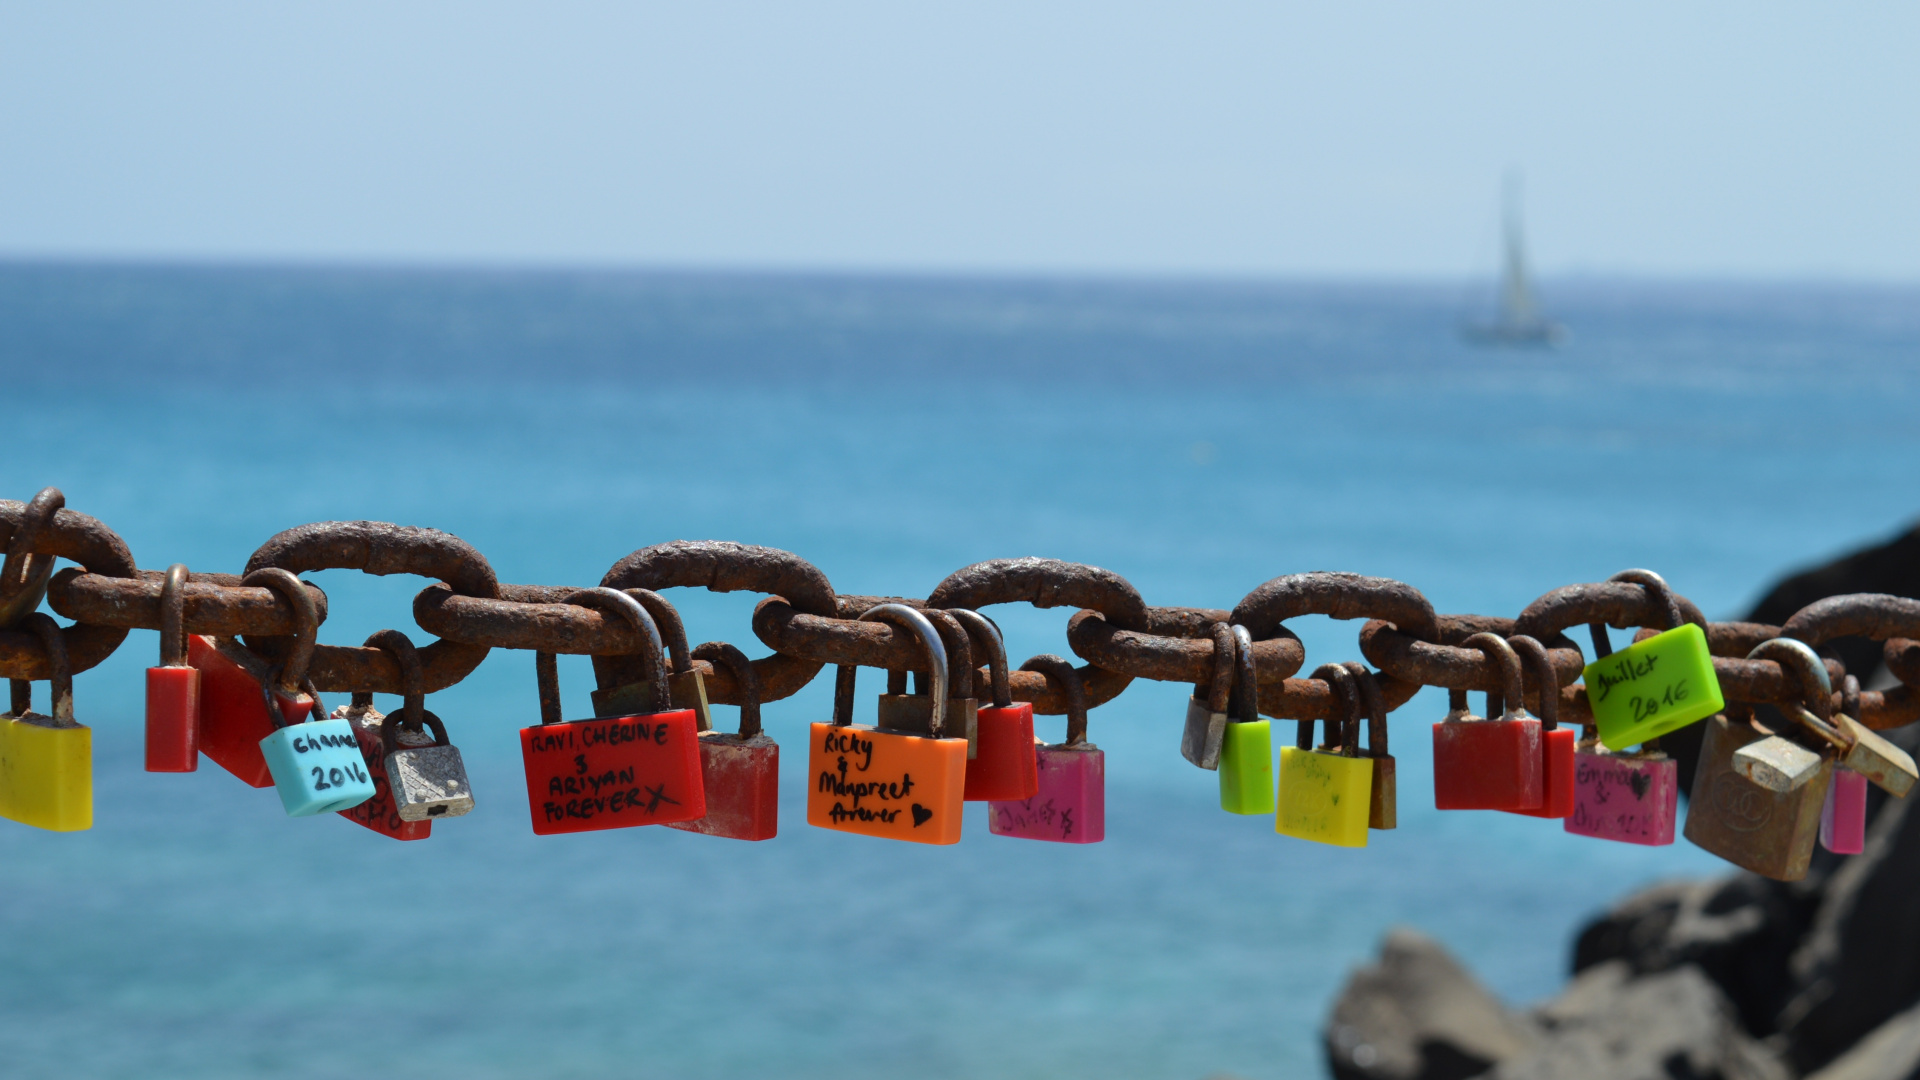 挂锁, 锁定, 锁和钥匙, 大海, 海洋 壁纸 1920x1080 允许